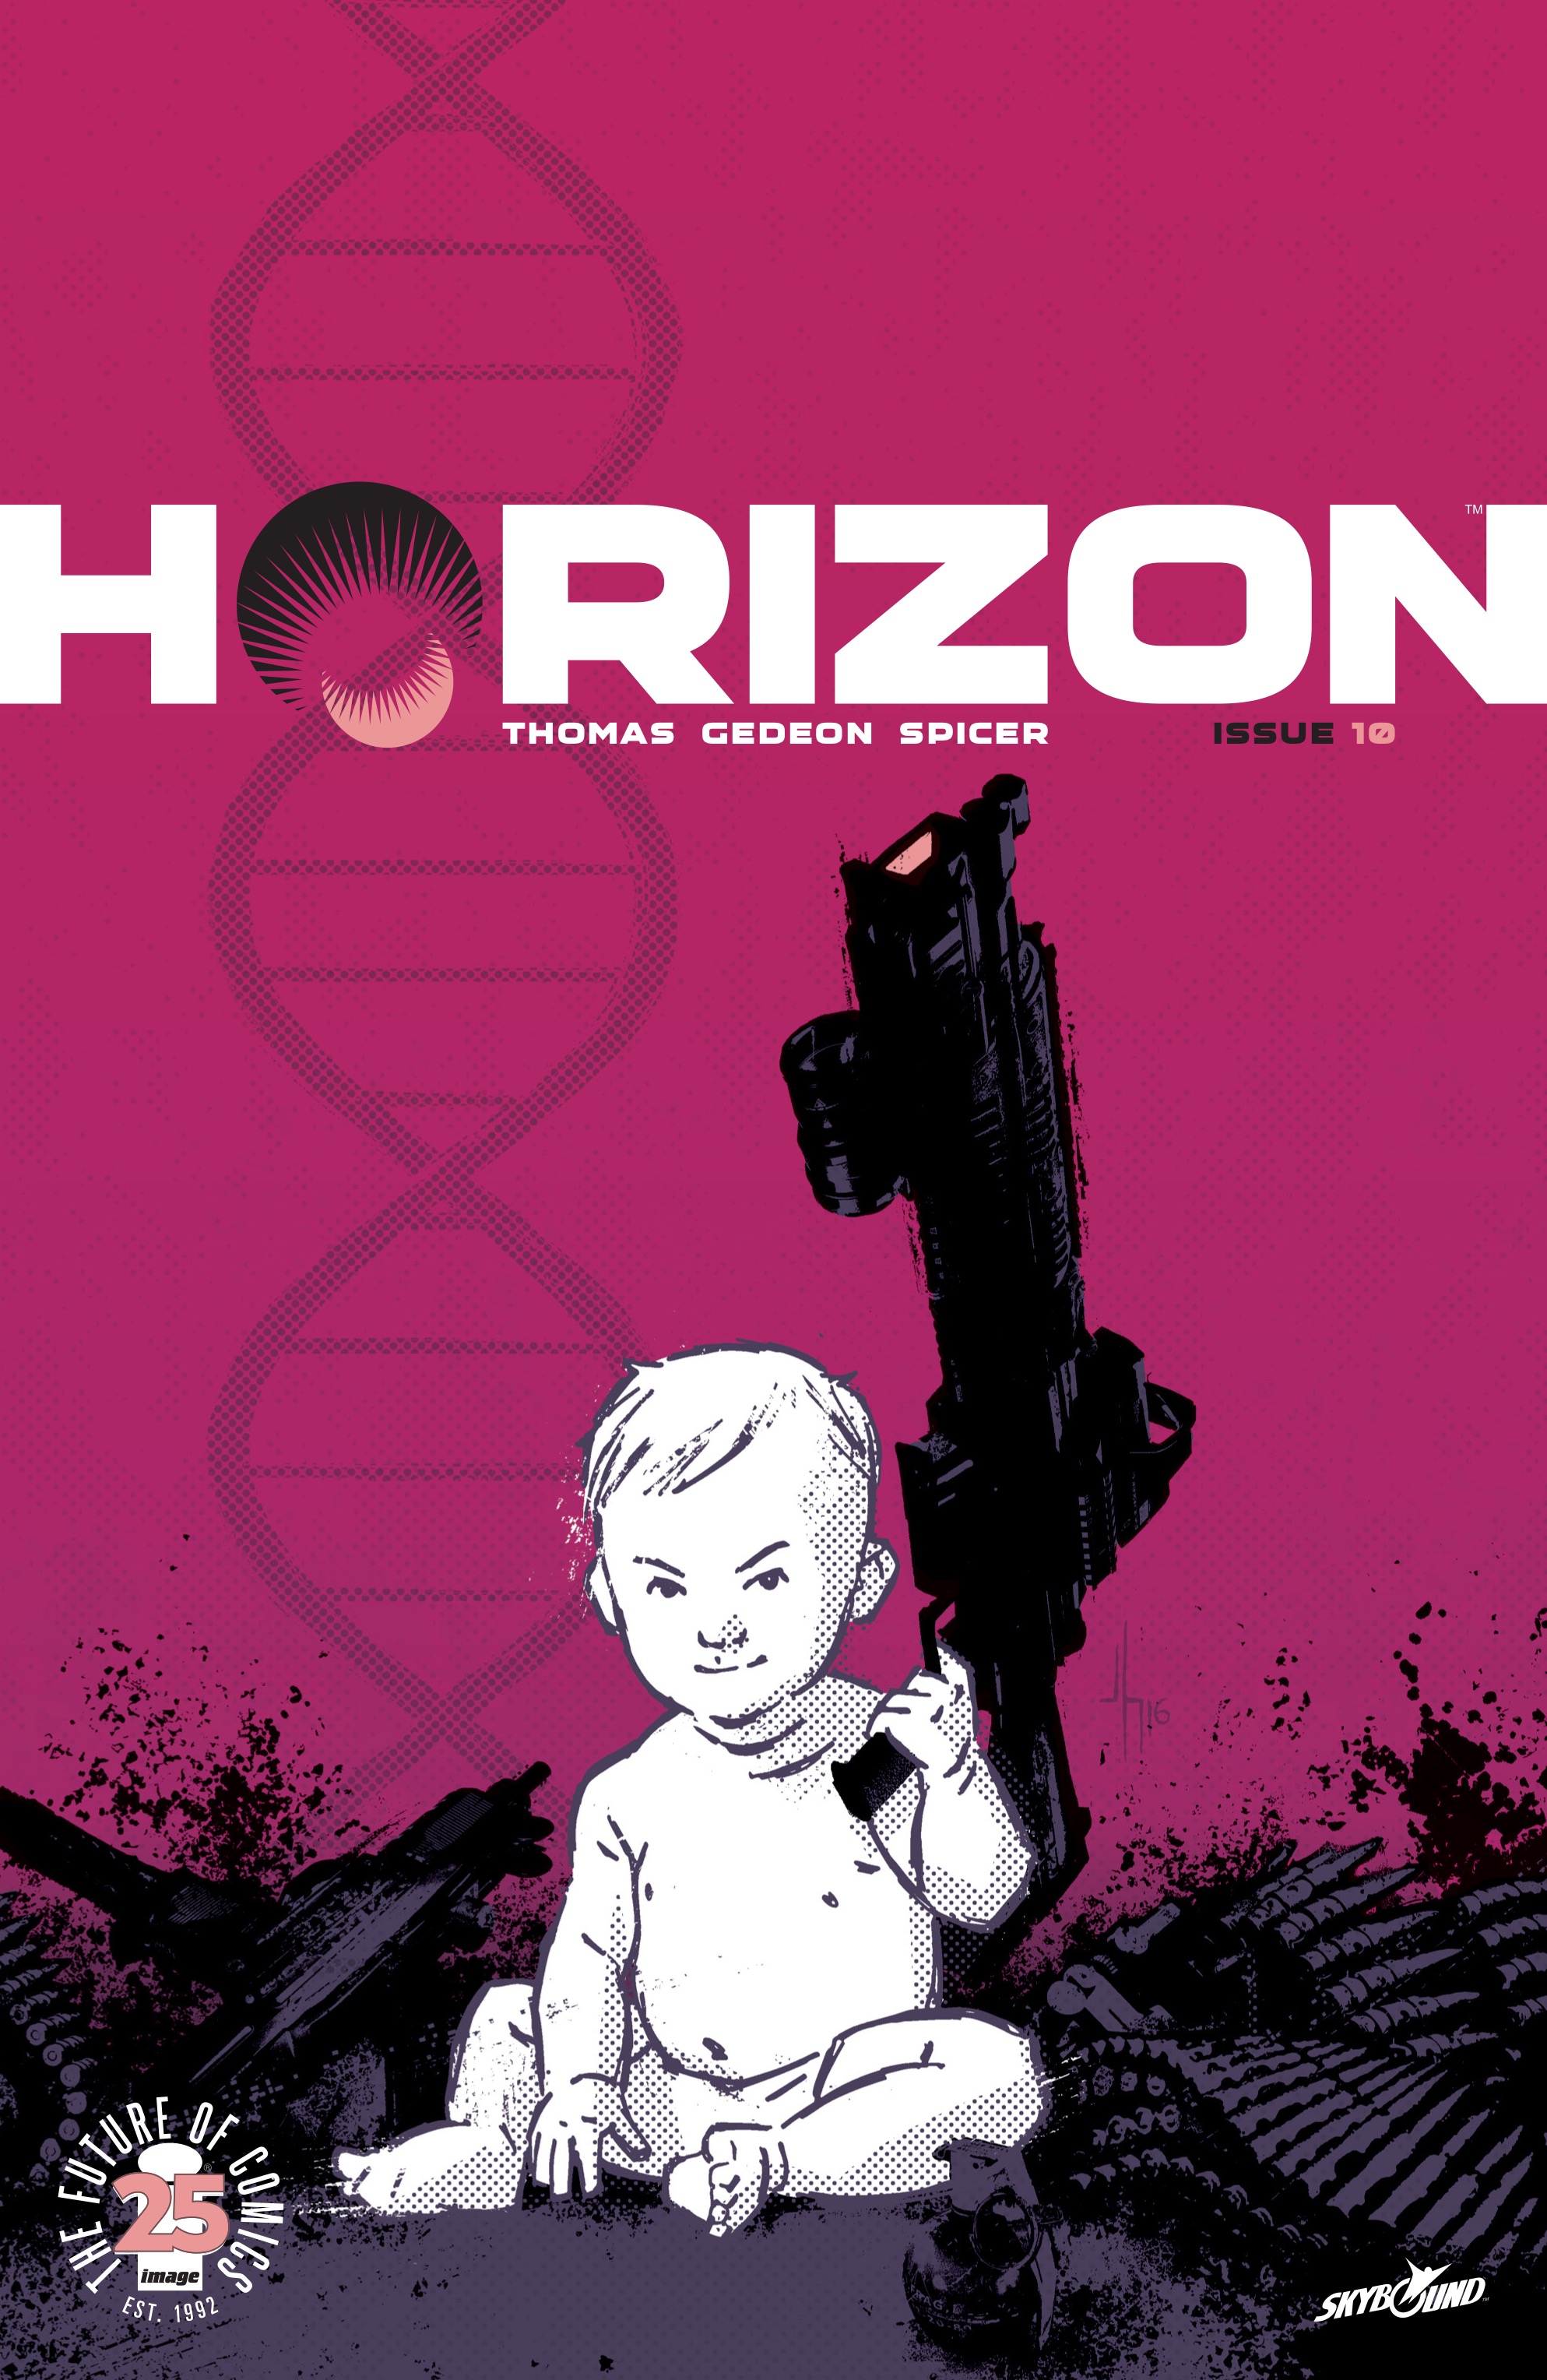 Read online Horizon comic -  Issue #10 - 1